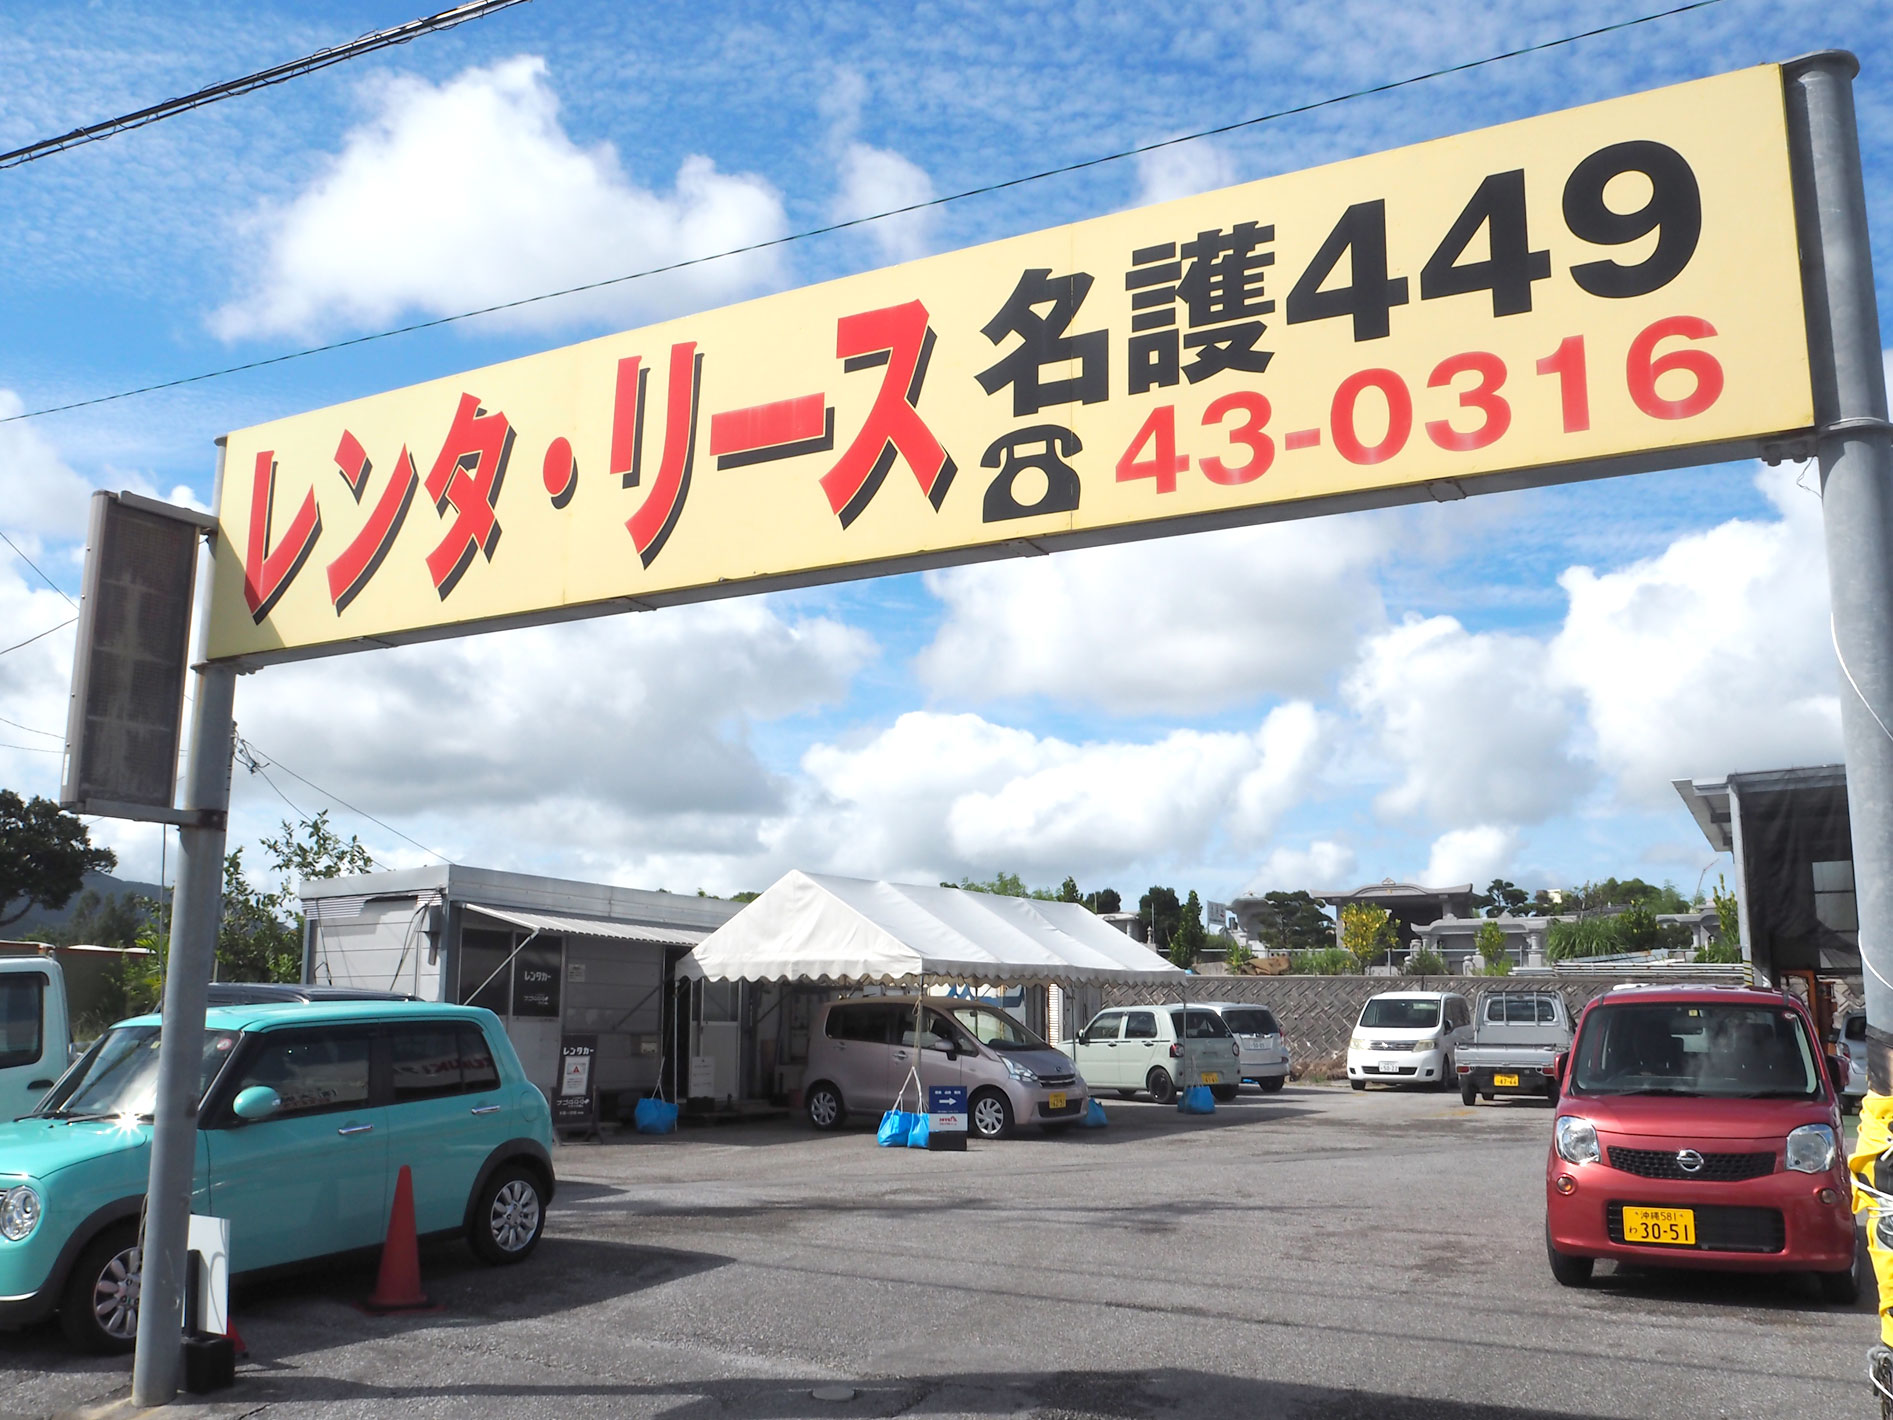 名護市宇茂佐の森にある レンタ リース名護449 観光情報 Nagos Okinawa Web Magazine